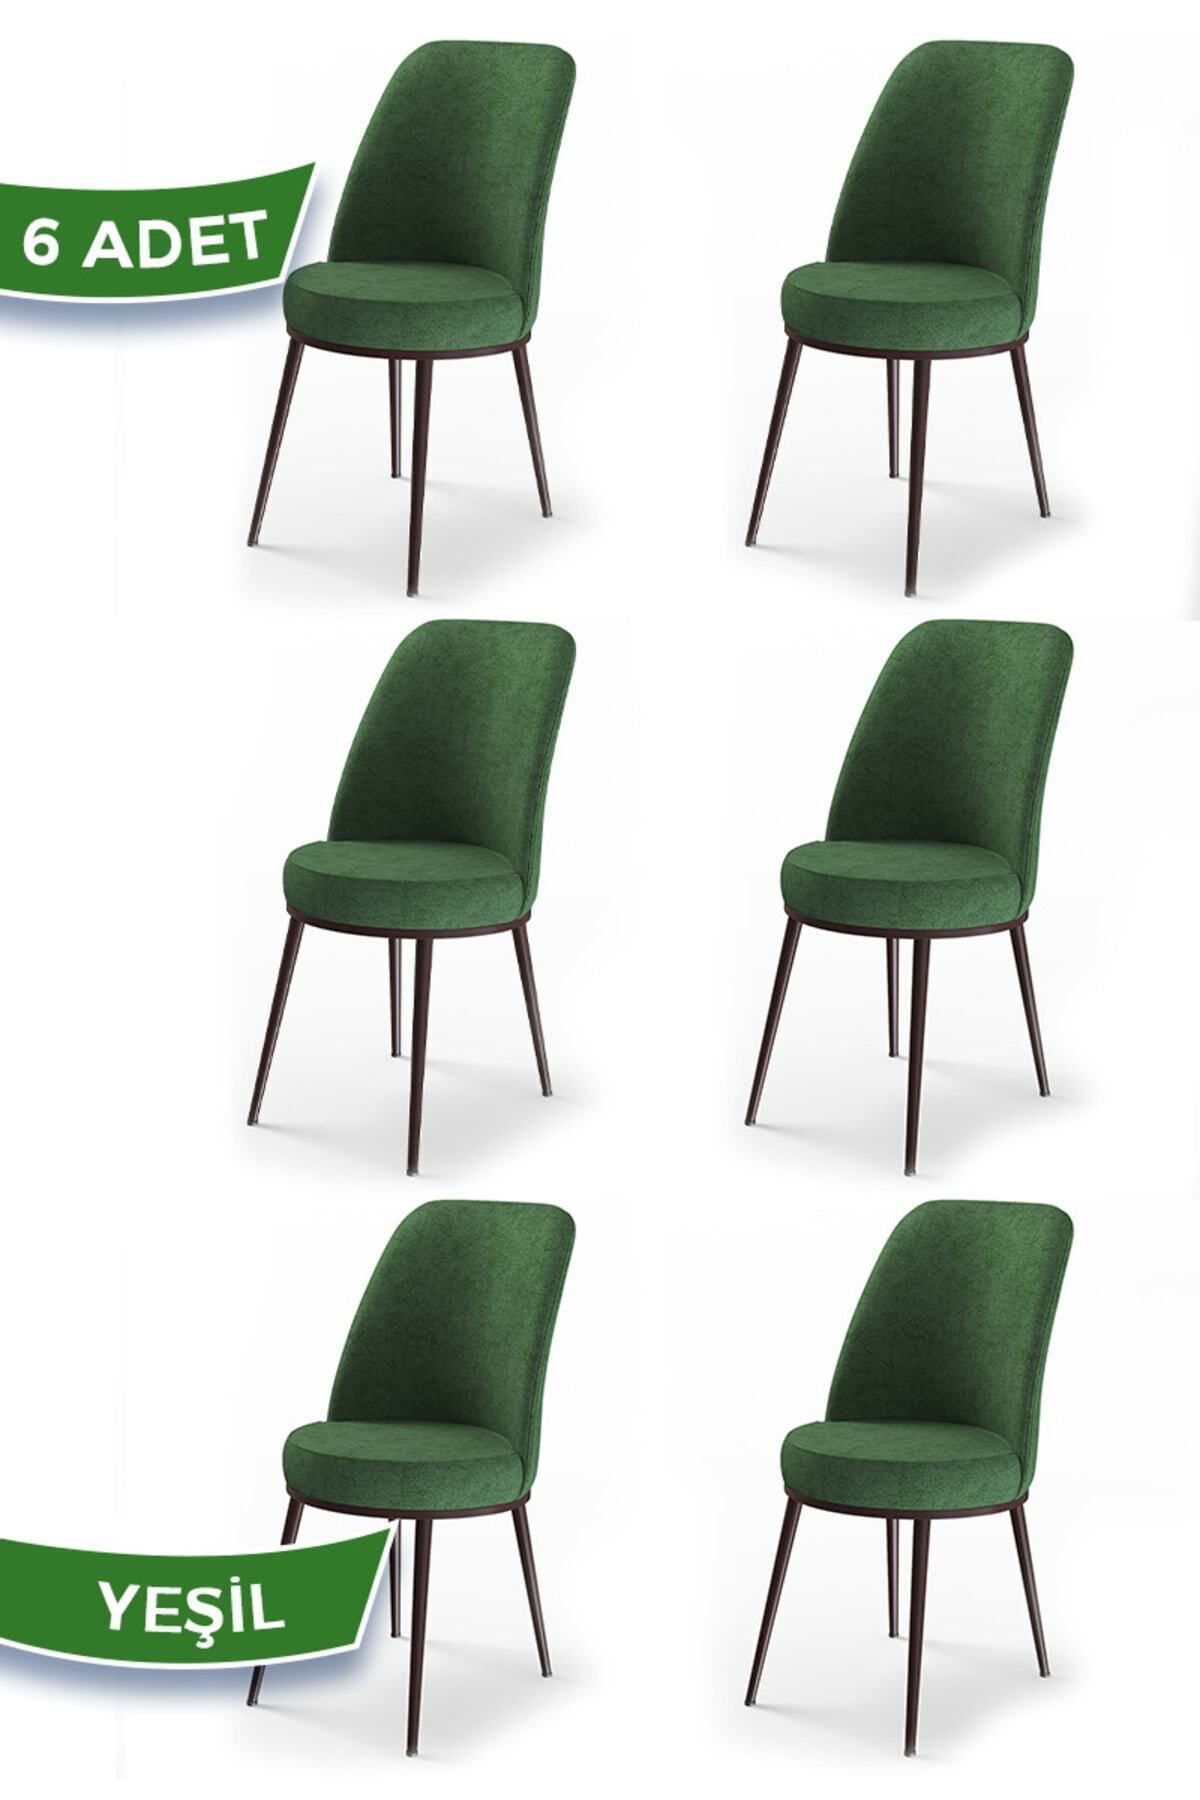 Canisa Concept Dexa Serisi Yeşil Renk 6 Adet Sandalye, Renk Yeşil, Ayaklar Kahverengi